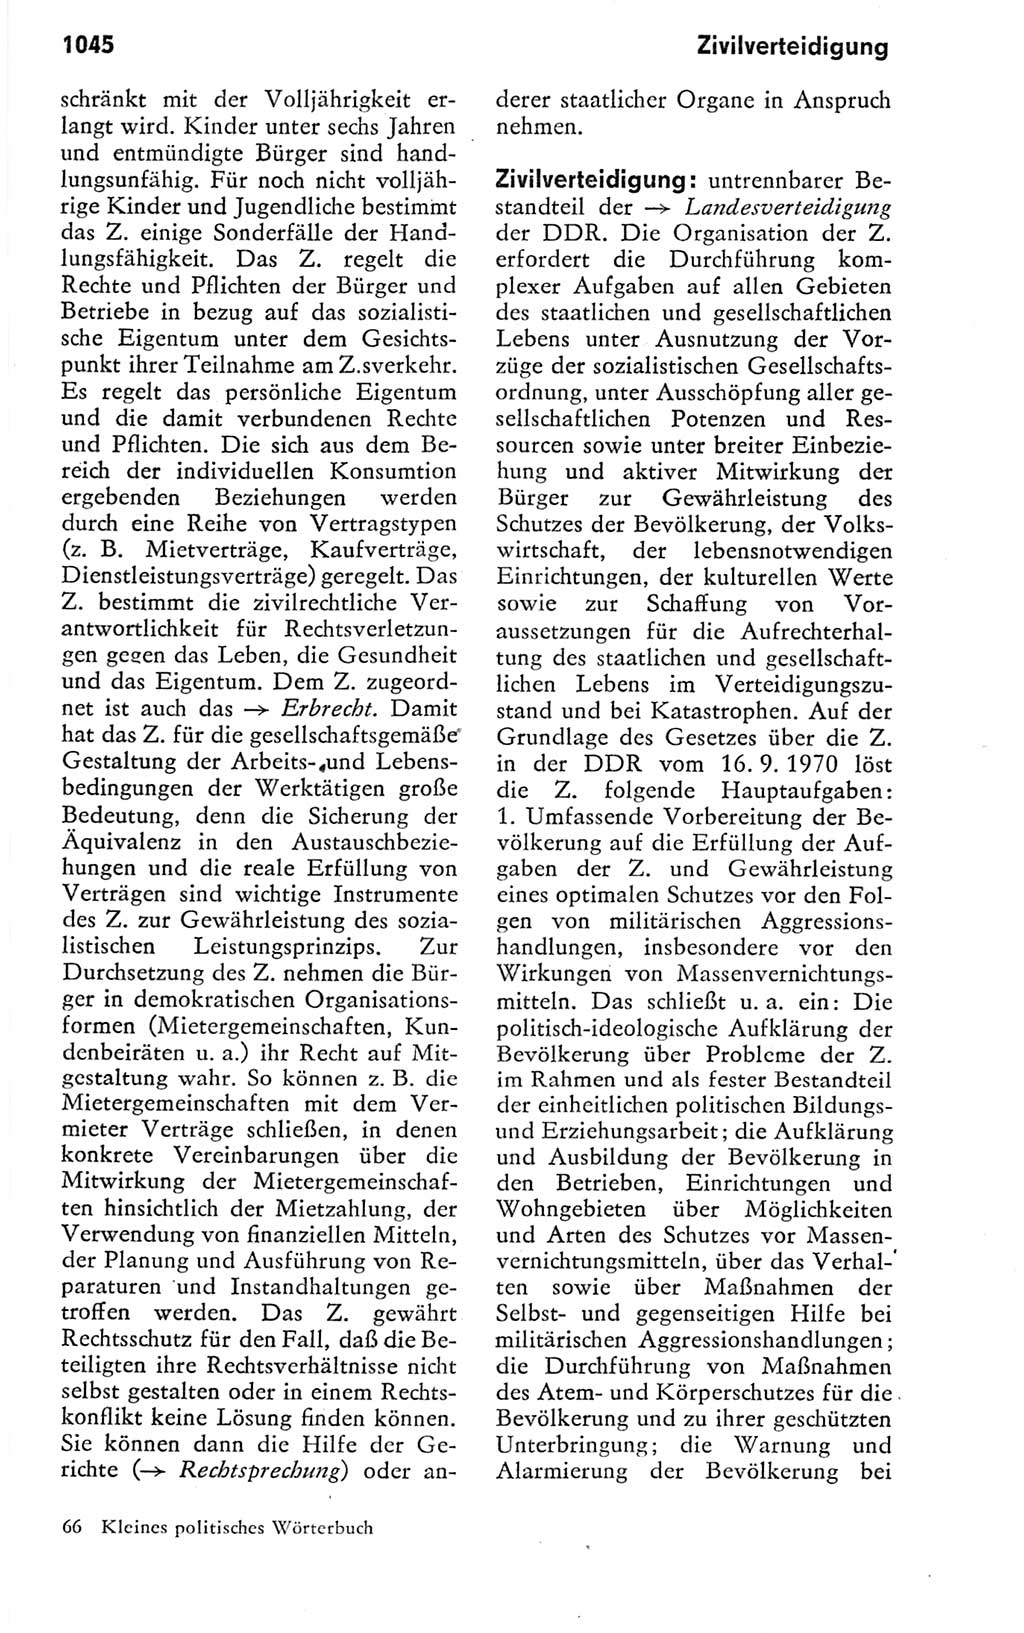 Kleines politisches Wörterbuch [Deutsche Demokratische Republik (DDR)] 1978, Seite 1045 (Kl. pol. Wb. DDR 1978, S. 1045)